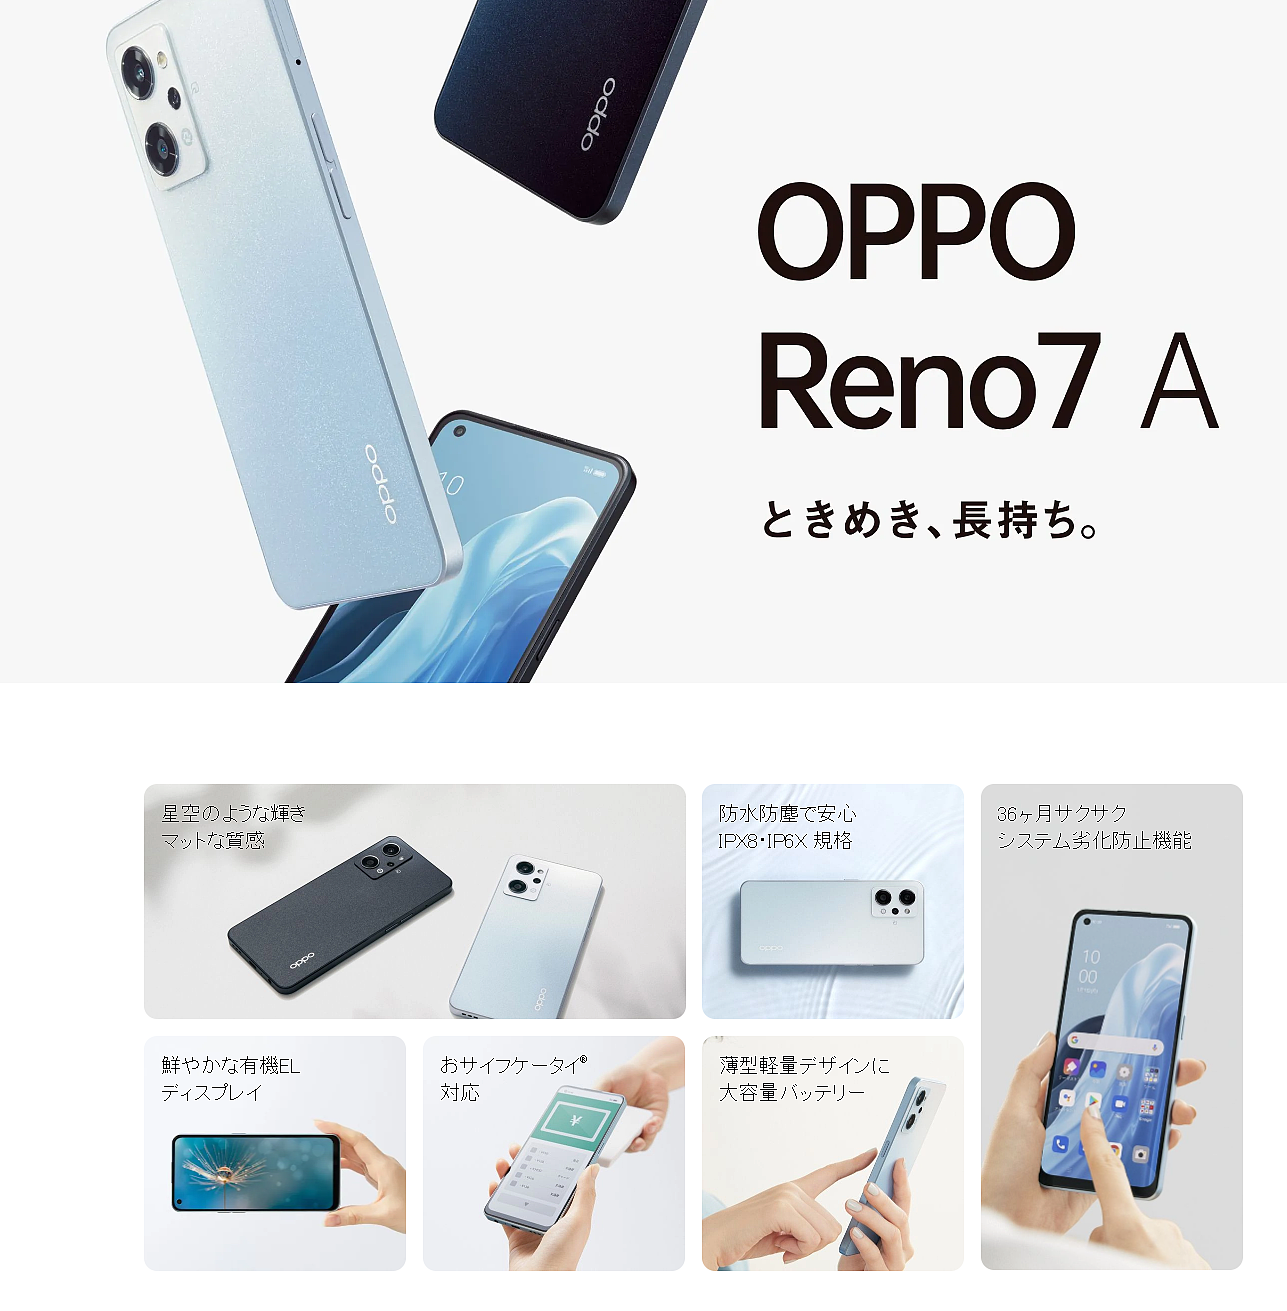 OPPO Reno7 A 手机在日本发布：搭载骁龙 695 5G 芯片，约 2258 元 - 1